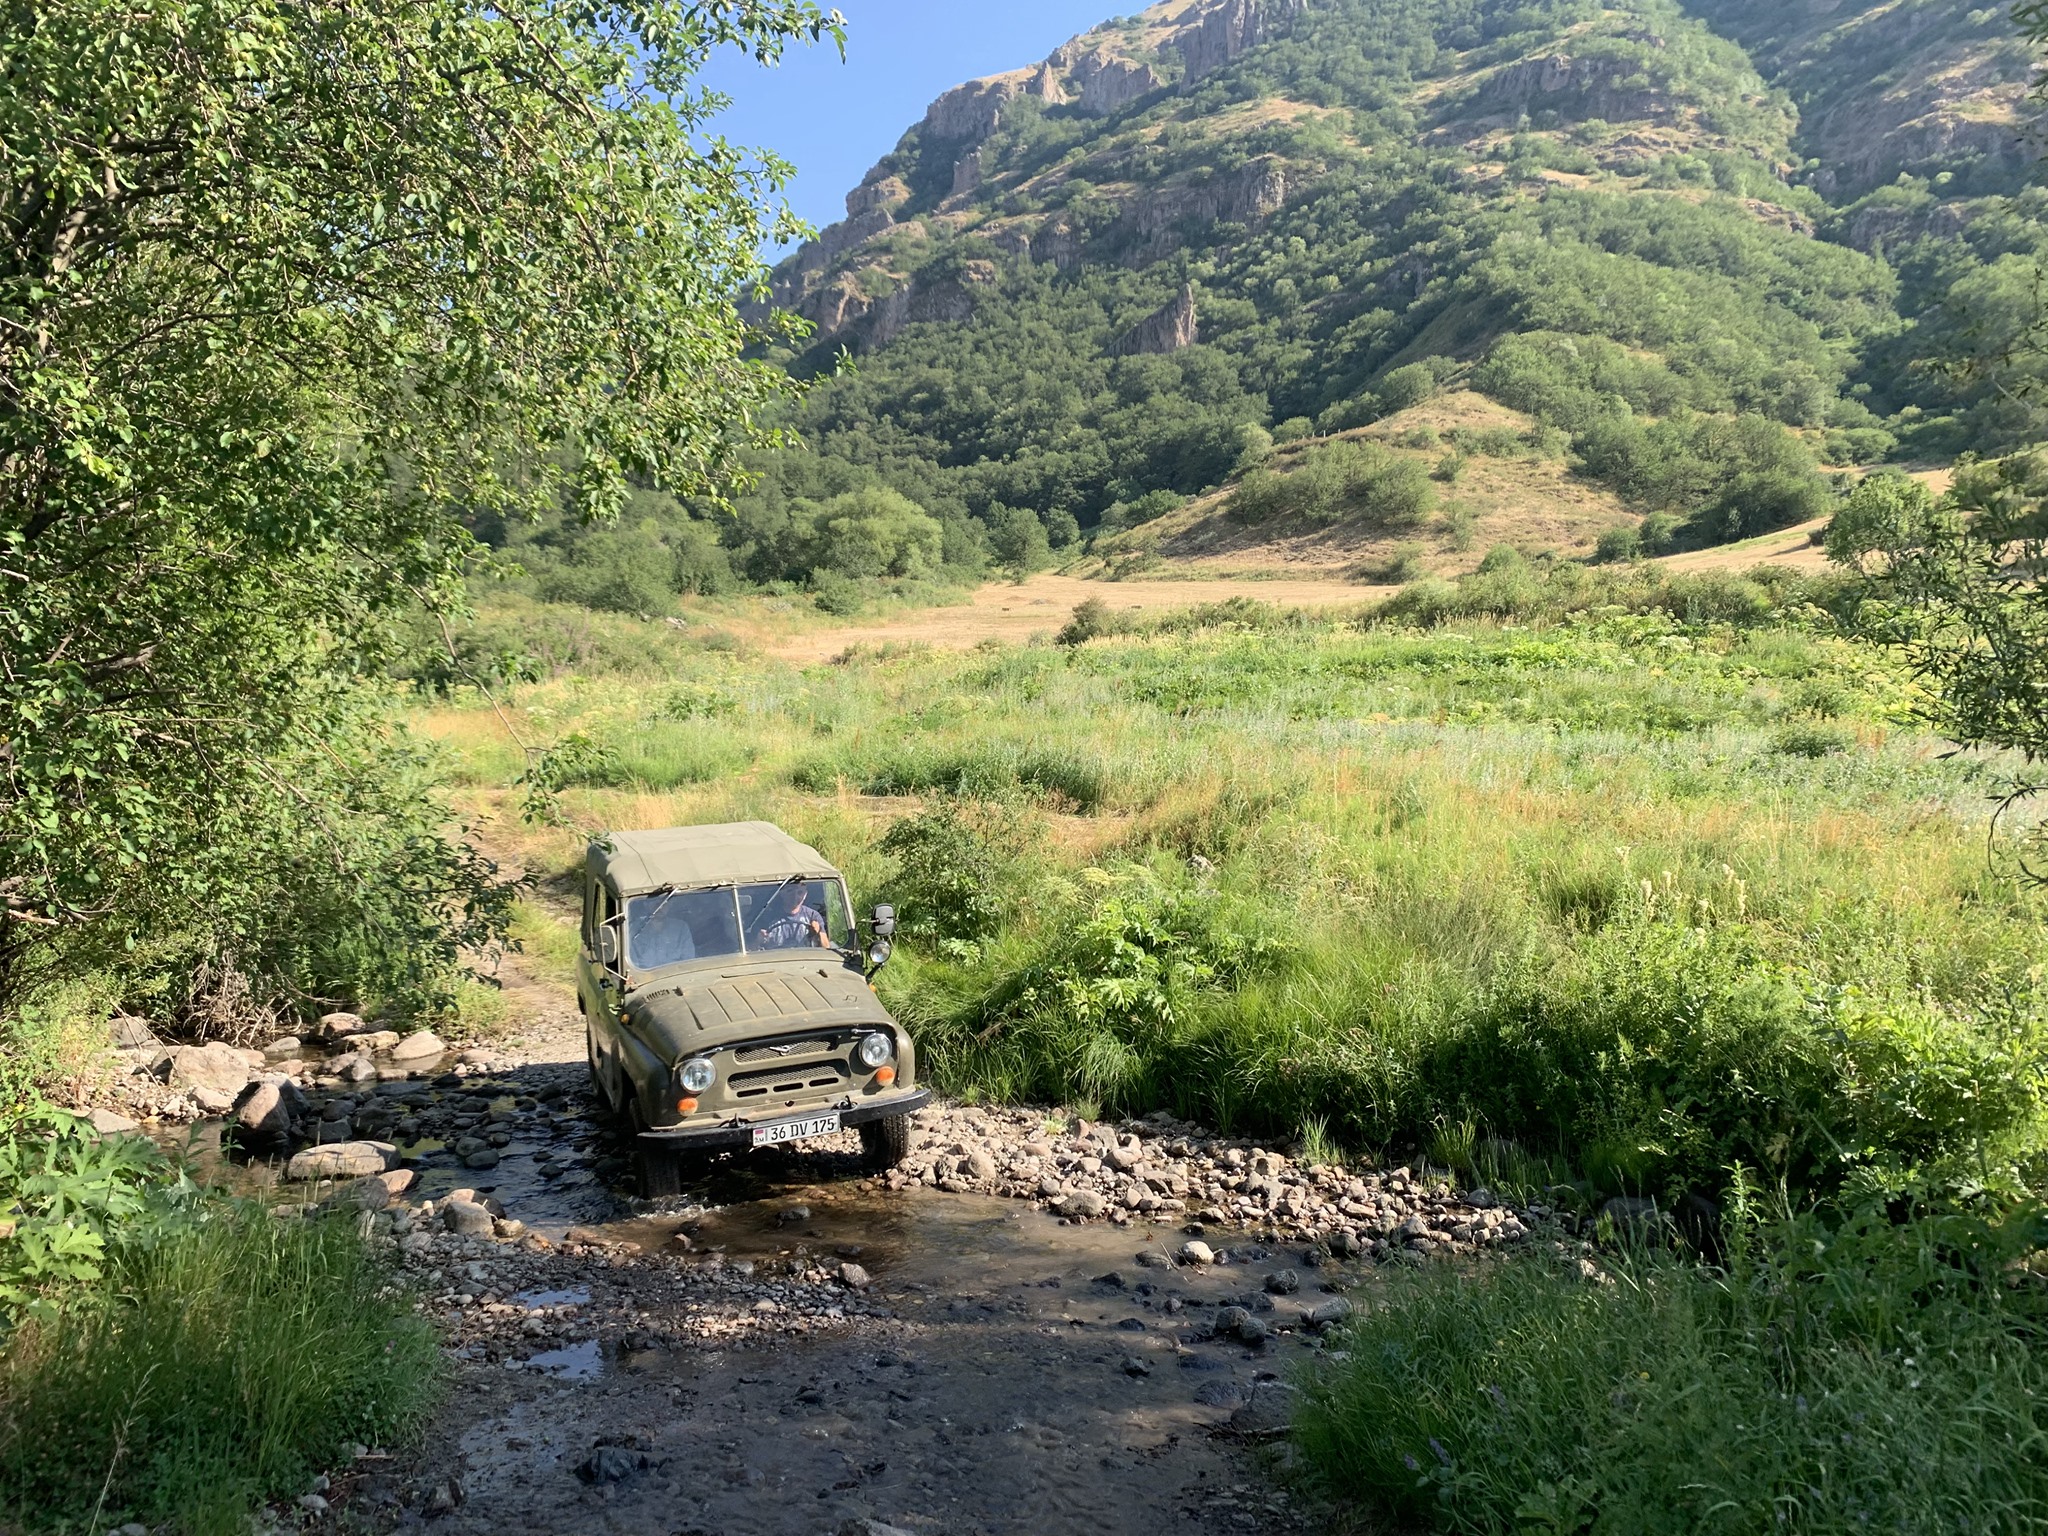 Soviet-era Jeeps essential for travel in Artavan